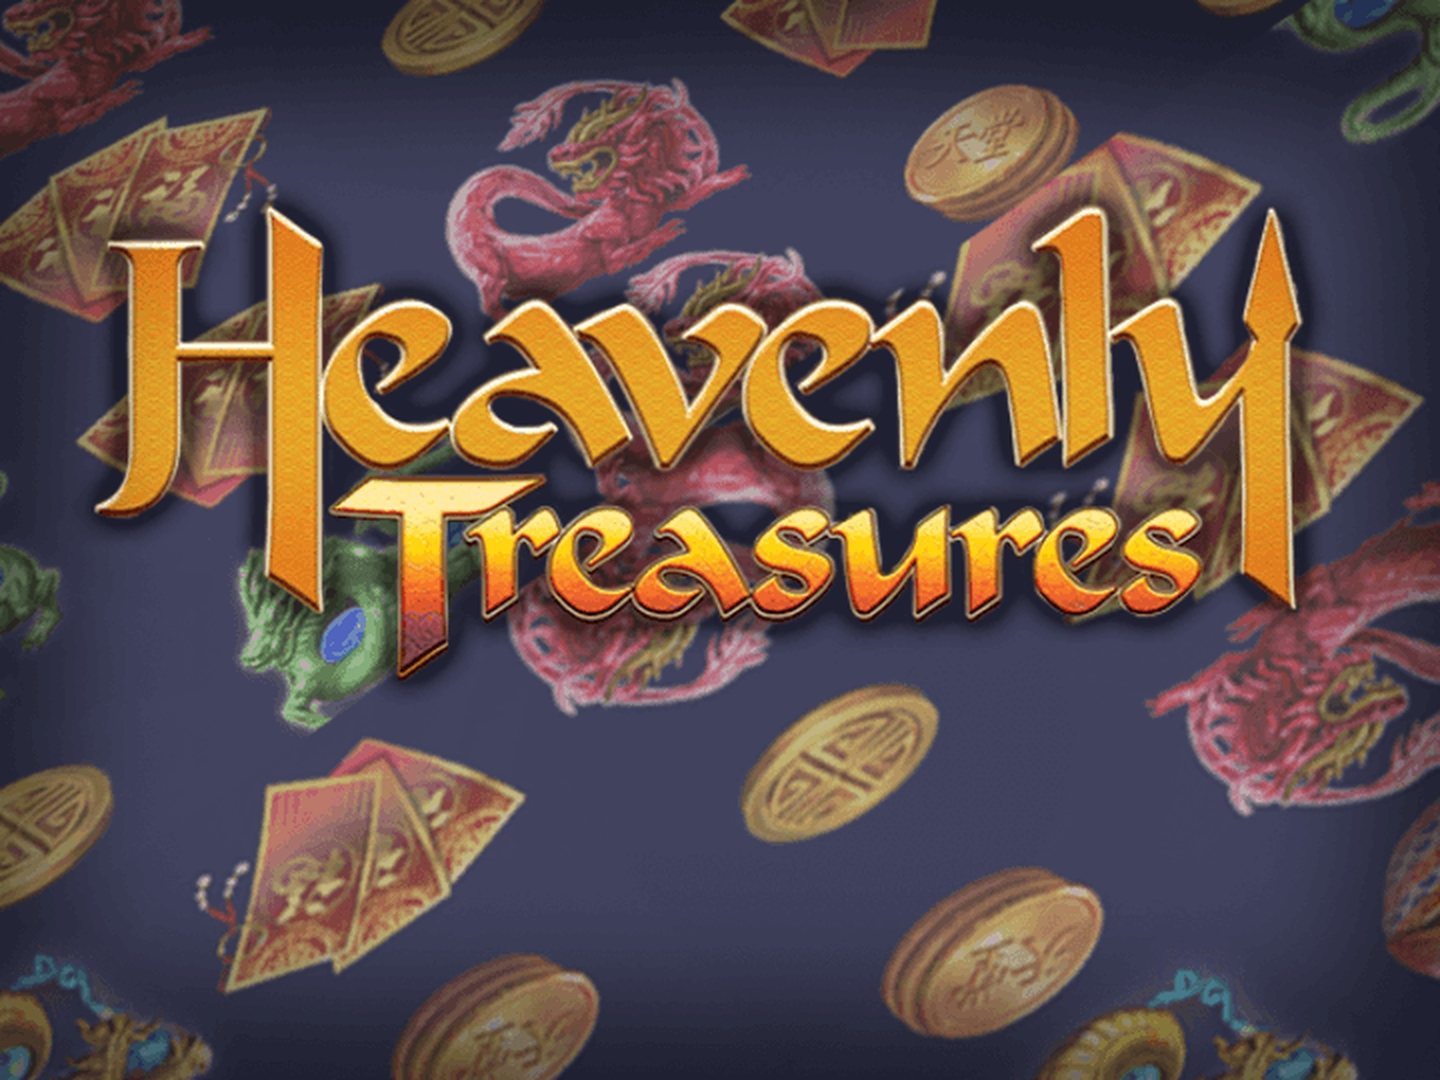 Heavenly Treasures demo